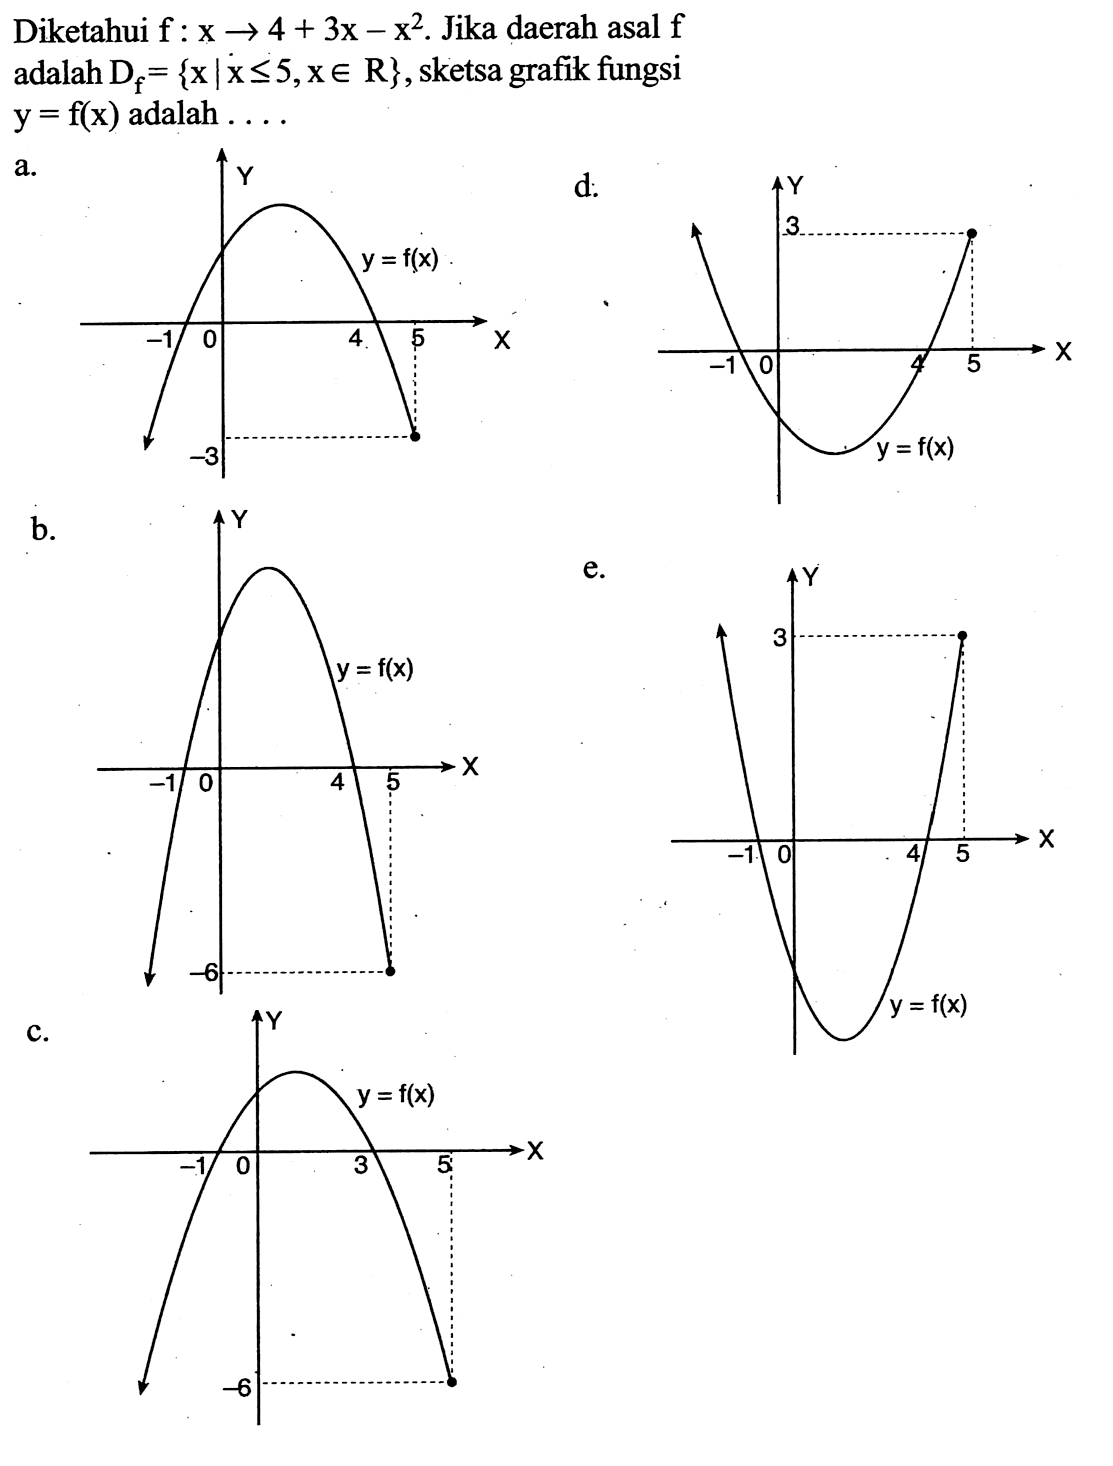 Diketahui f:x->4+3x-x^2. Jika daerah asal f adalah Df={x|x<=5, x e R}, sketsa grafik fungsi y=f(x) adalah....